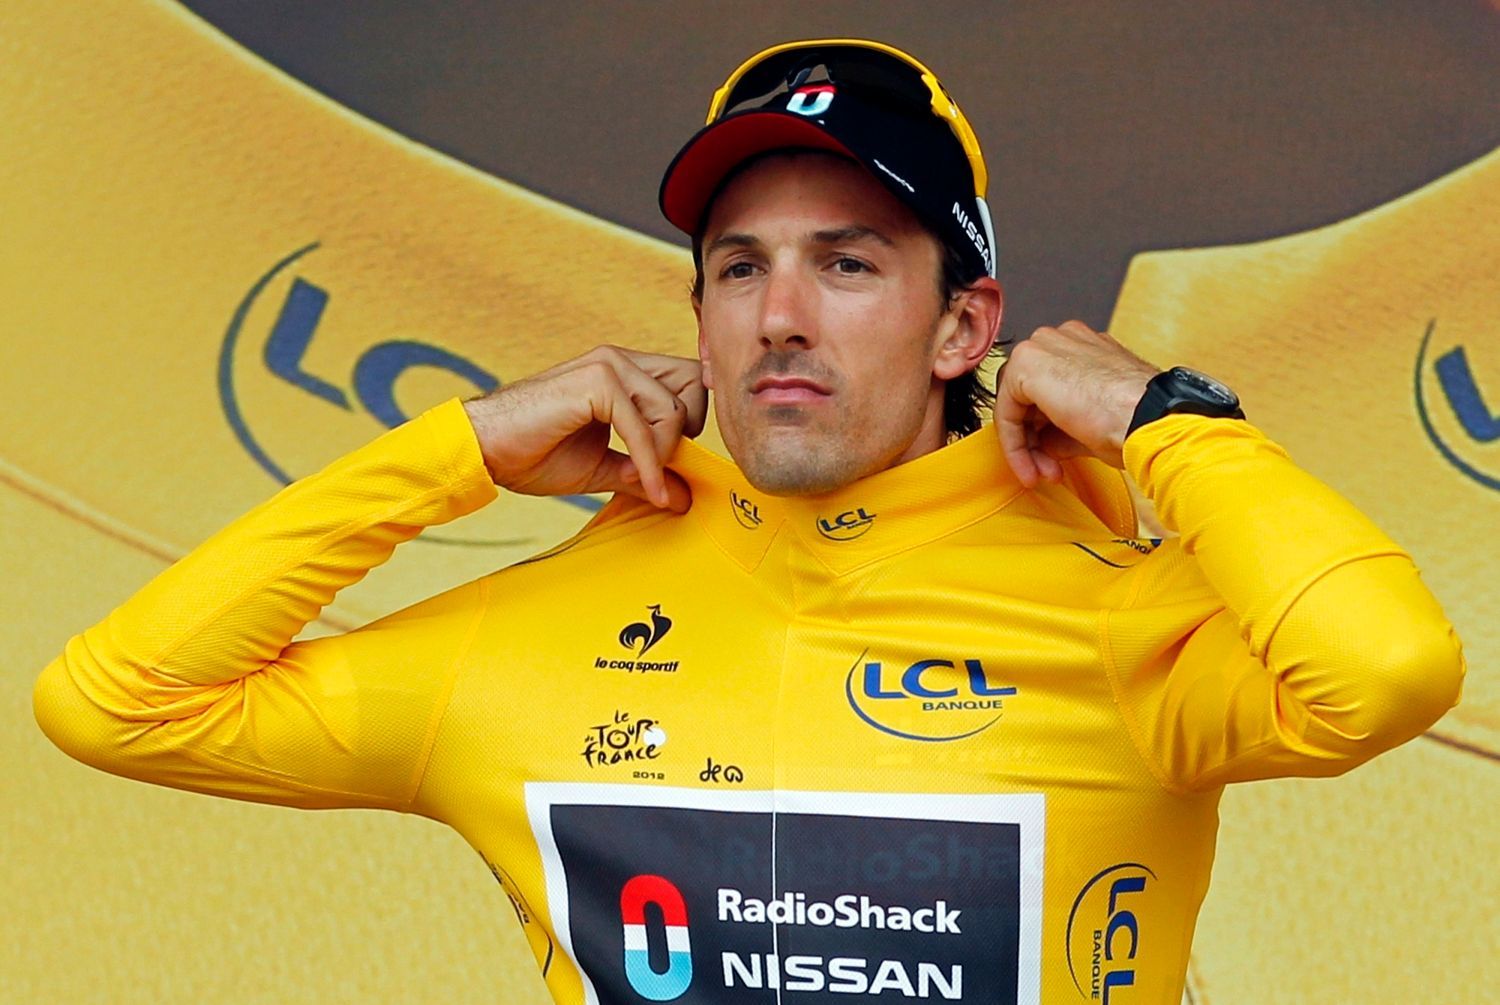 Švýcarský cyklista Fabian Cancellara si si po třech etapách drží prvenství v 99. Tour de France